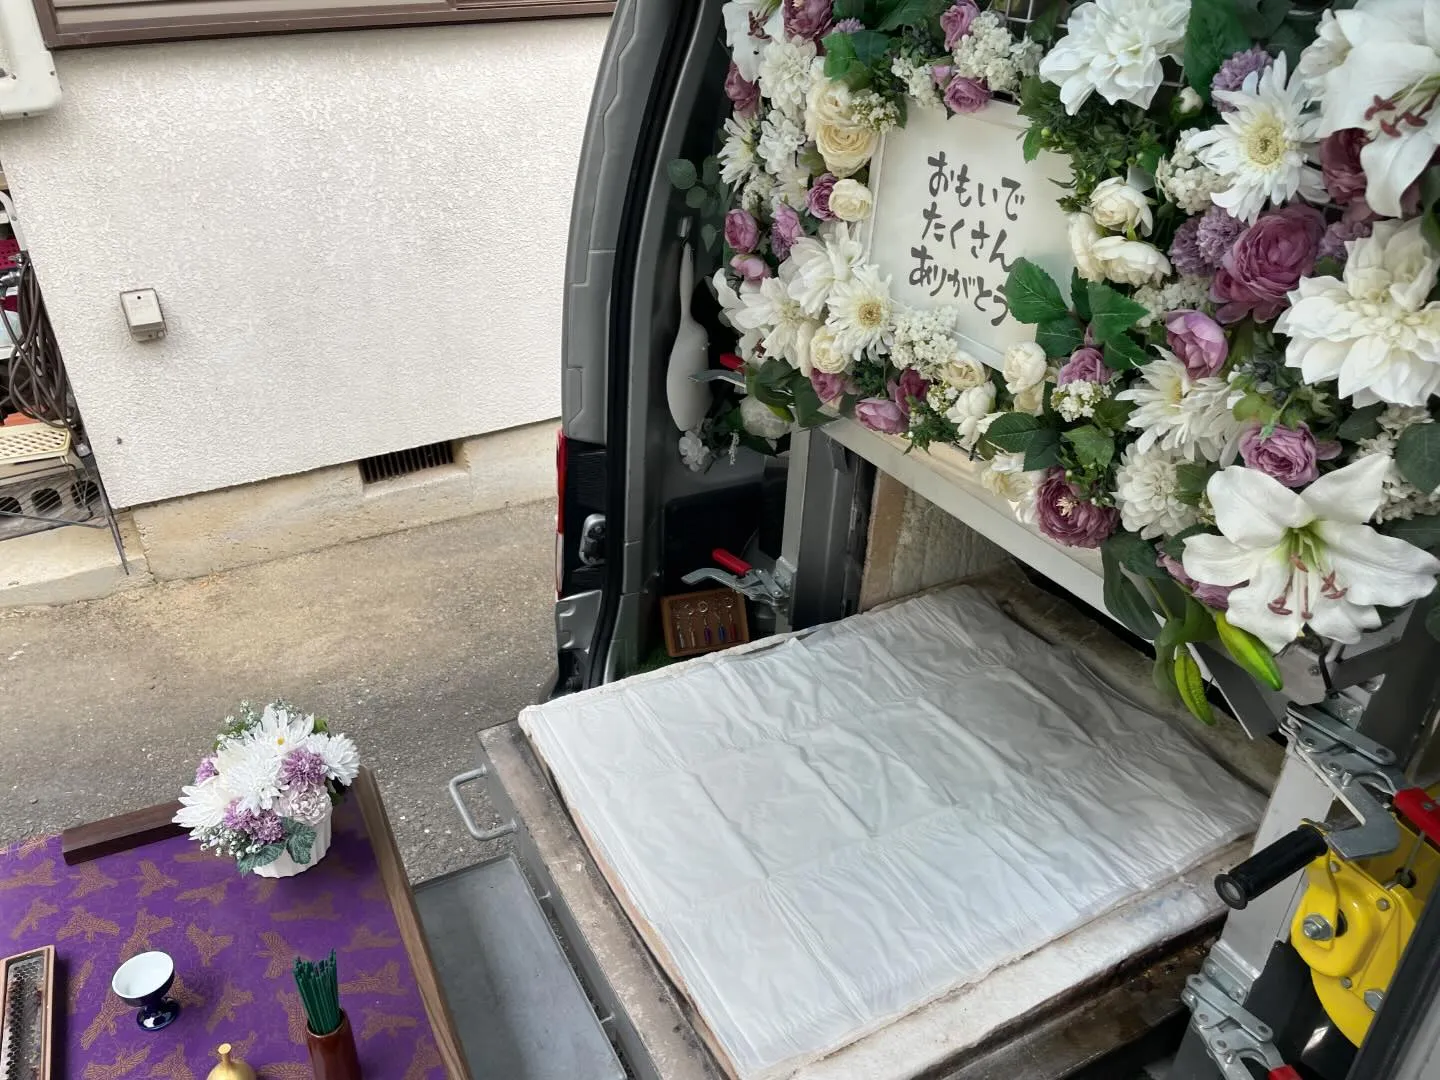 東京都武蔵村山市にてトイプードルちゃんのご火葬に伺いました。